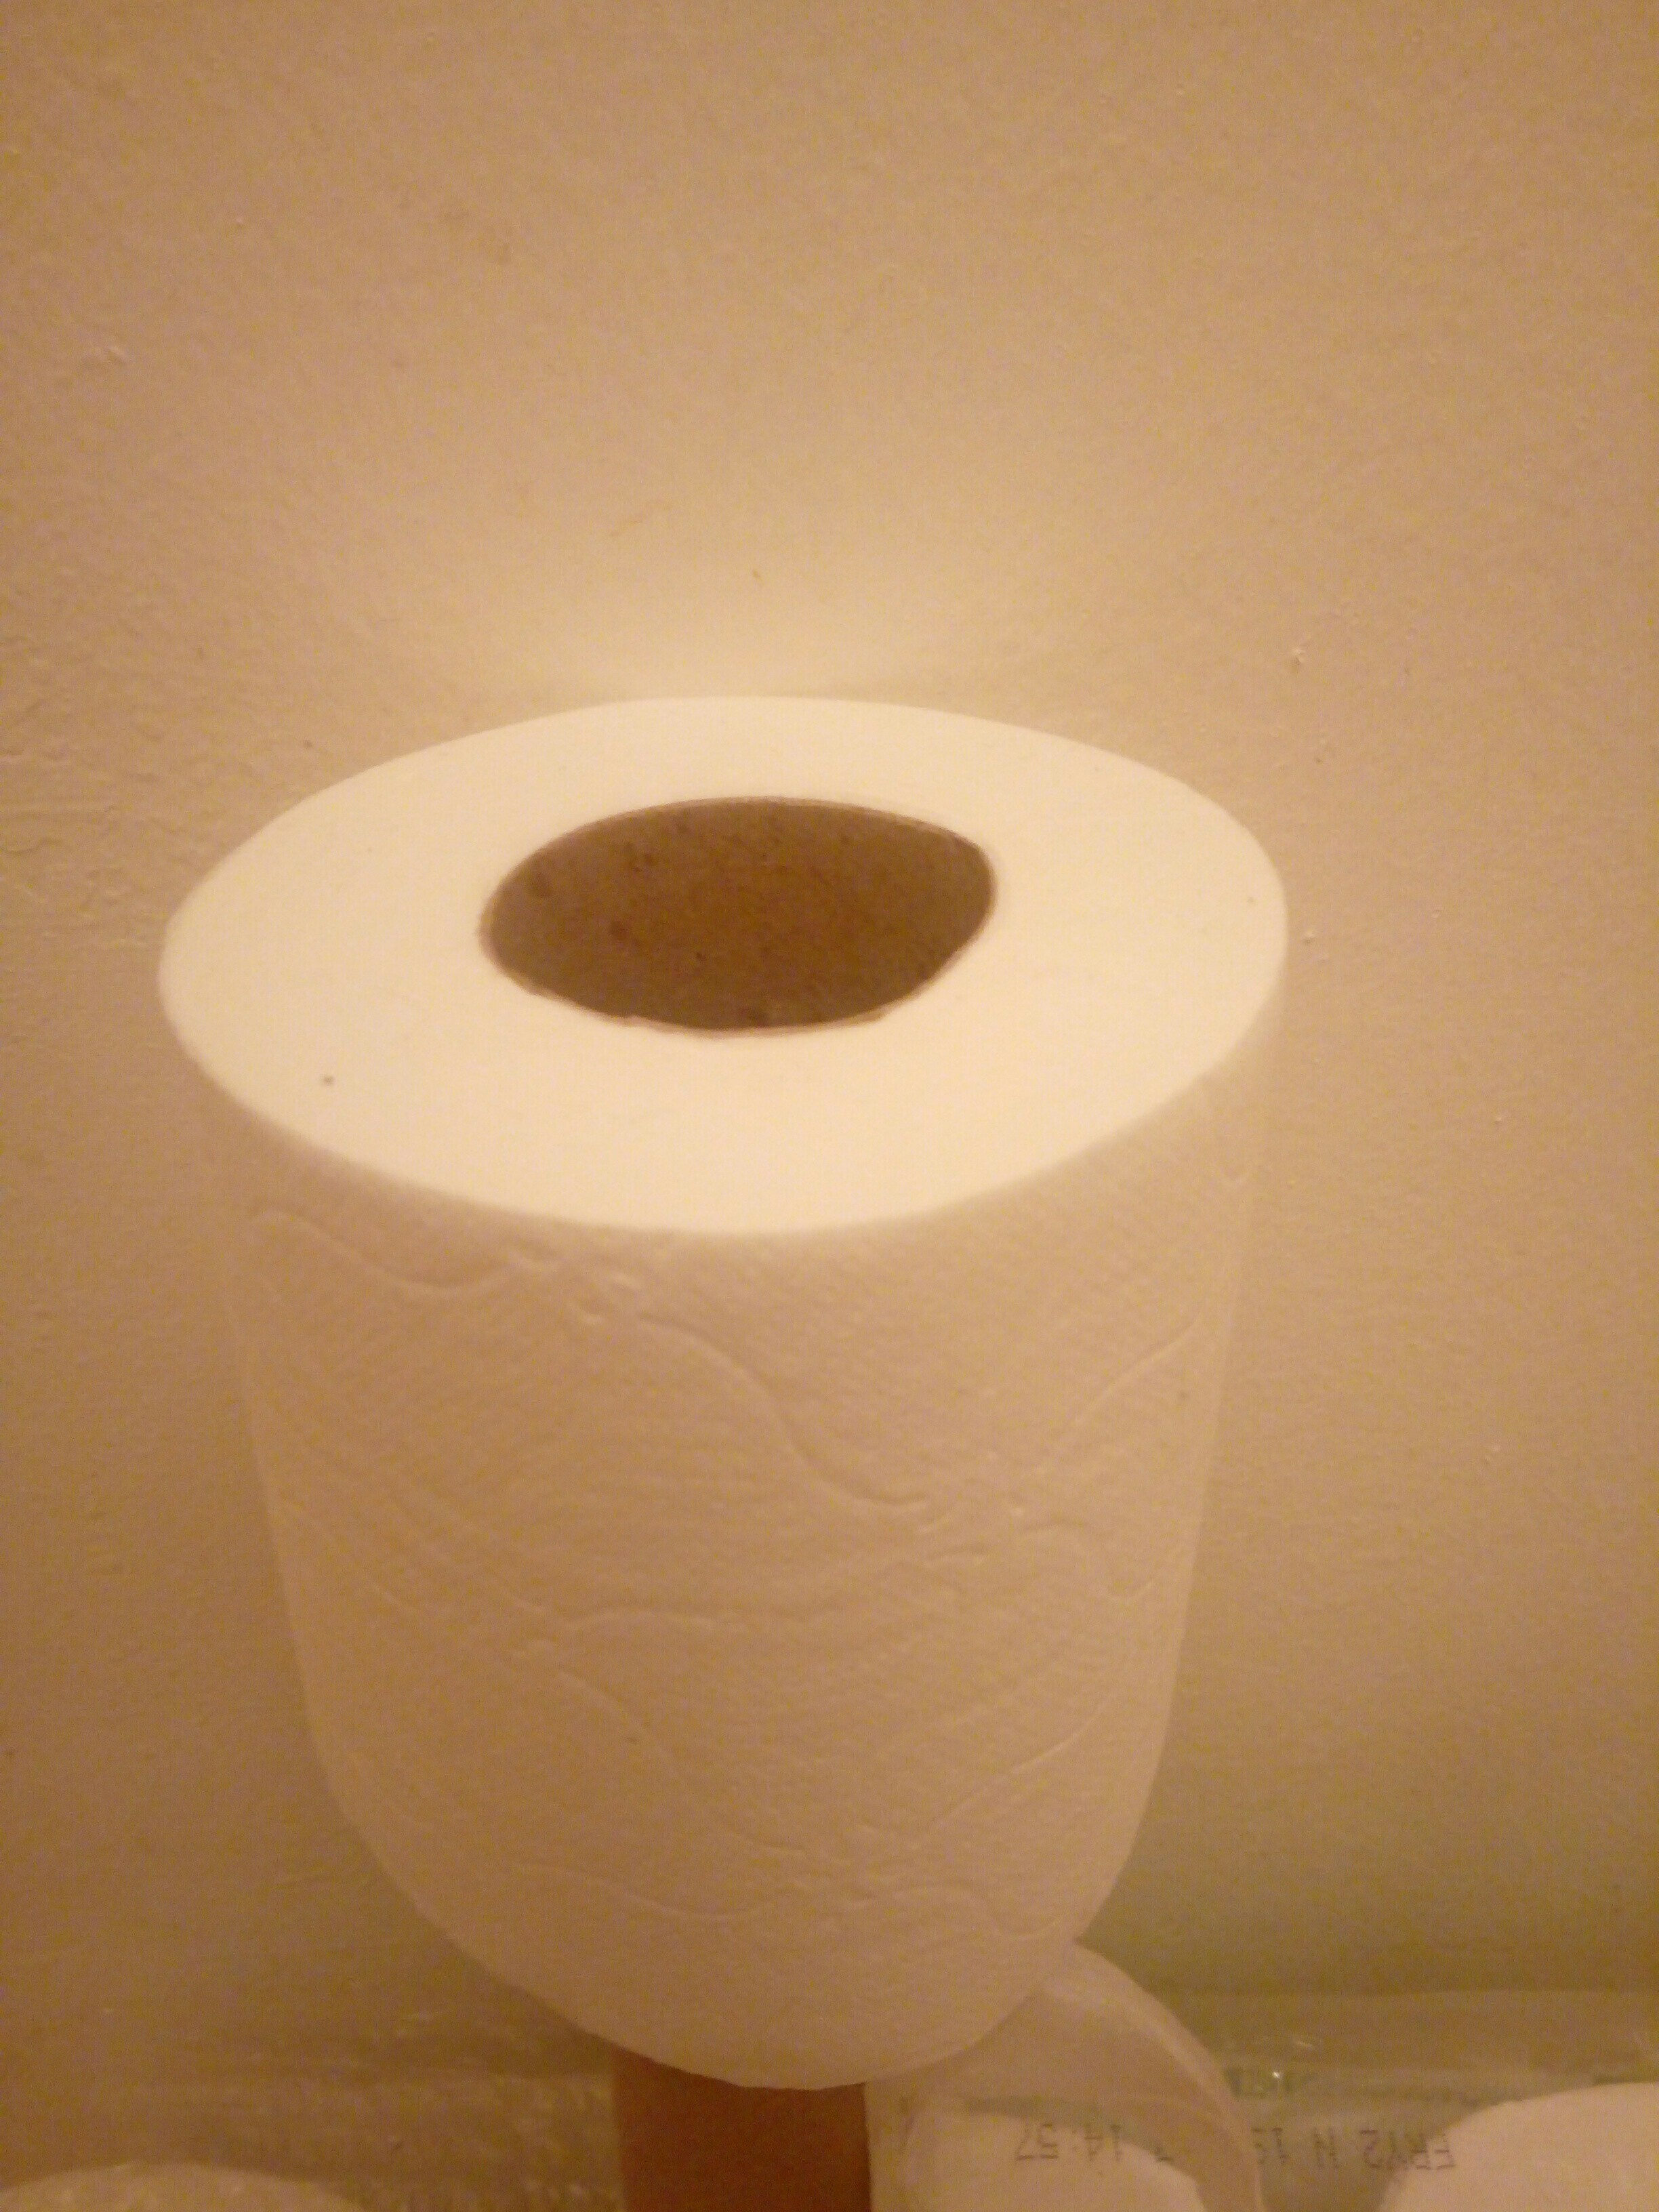 papier toilette - Tuote - fr